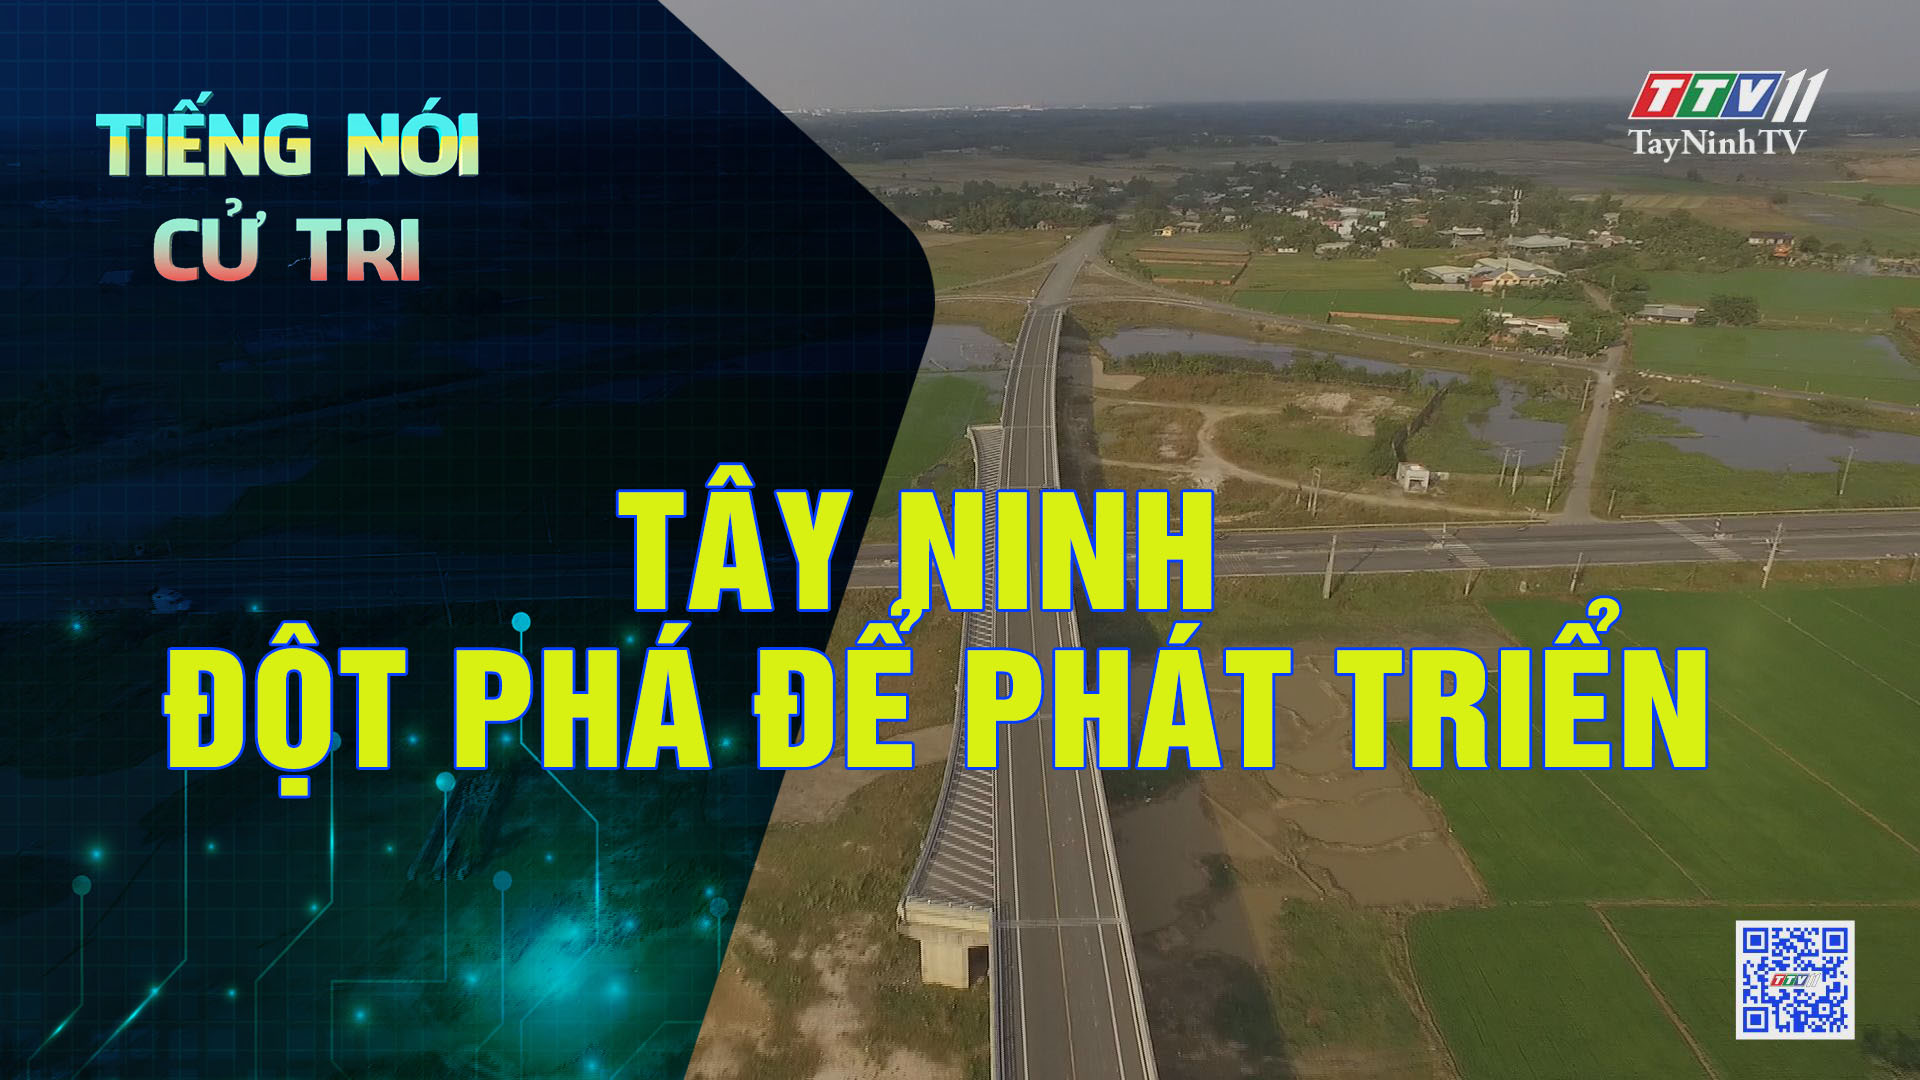 Tây Ninh: Đột phá để phát triển | Tiếng nói cử tri | TayNinhTV